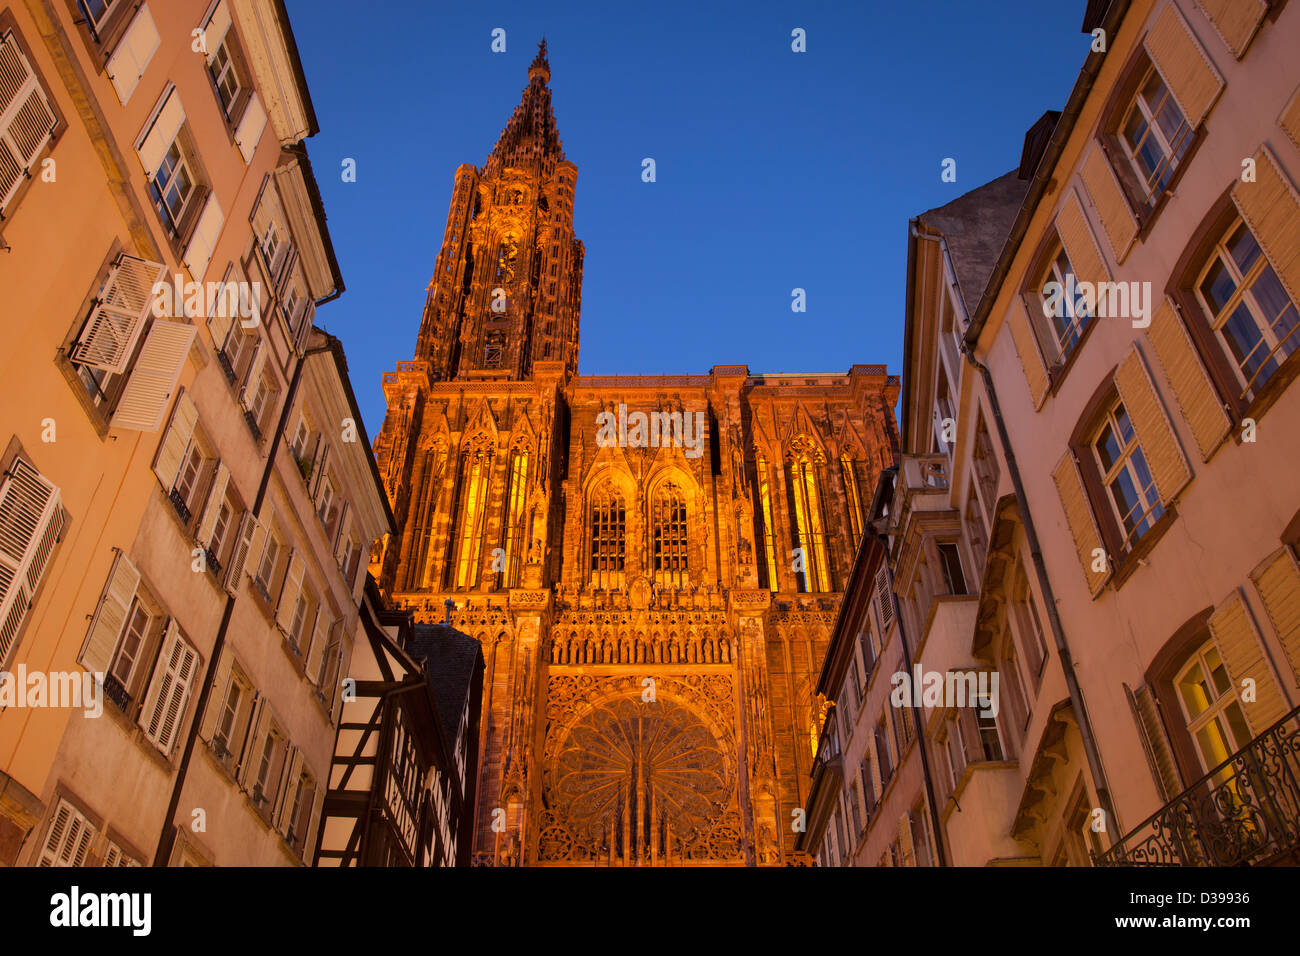 La cathédrale de Strasbourg ornementé domine les bâtiments de Strasbourg, Alsace France Banque D'Images